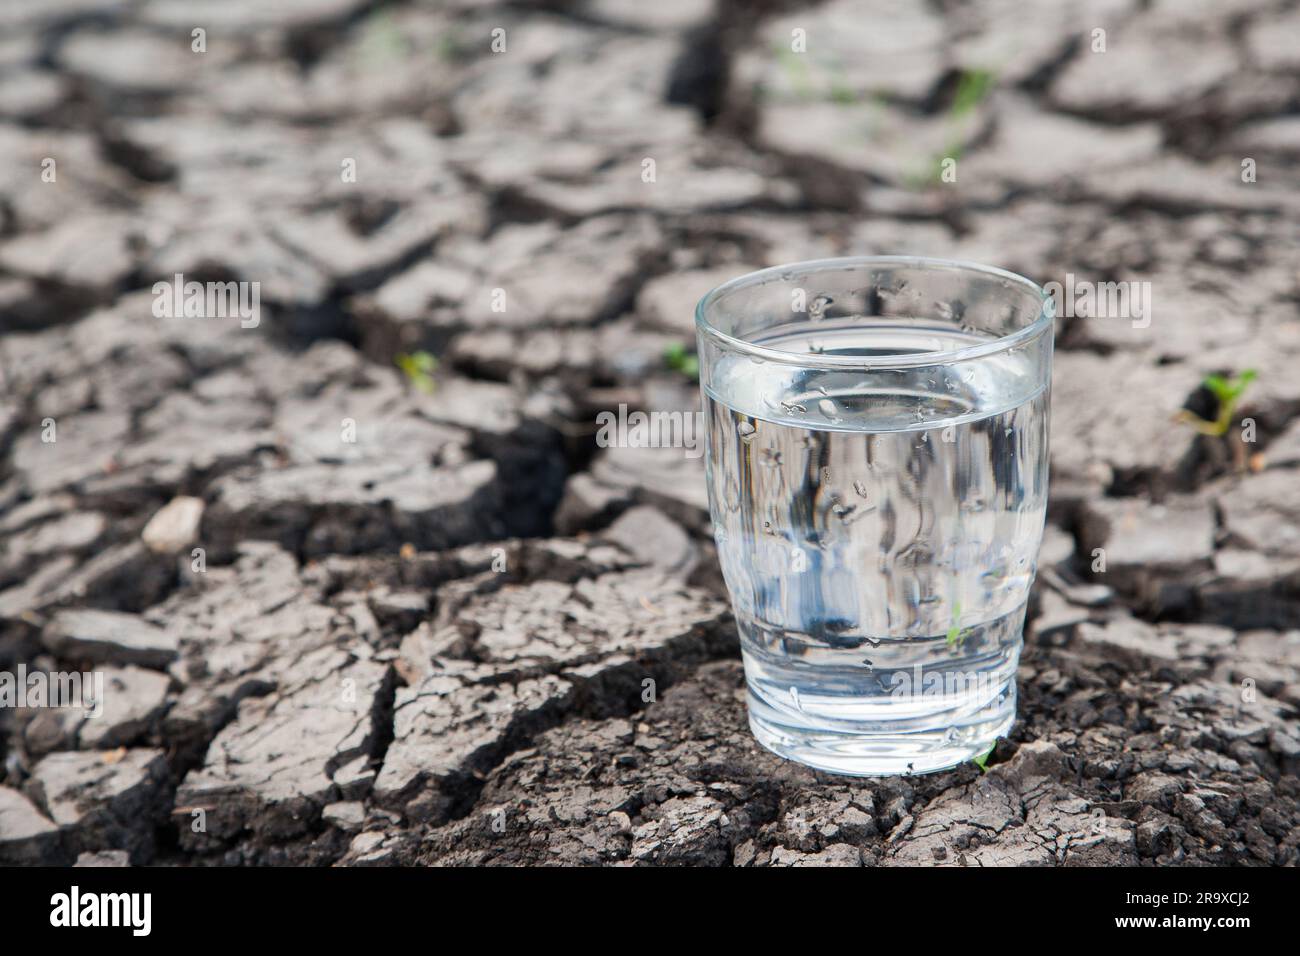 Ein volles Glas Wasser steht auf trockenem Boden. Stehen wir kurz vor einem ernsten Trinkwasserproblem? Aufgrund des Klimas, der Trockenperioden in Europa und G Stockfoto